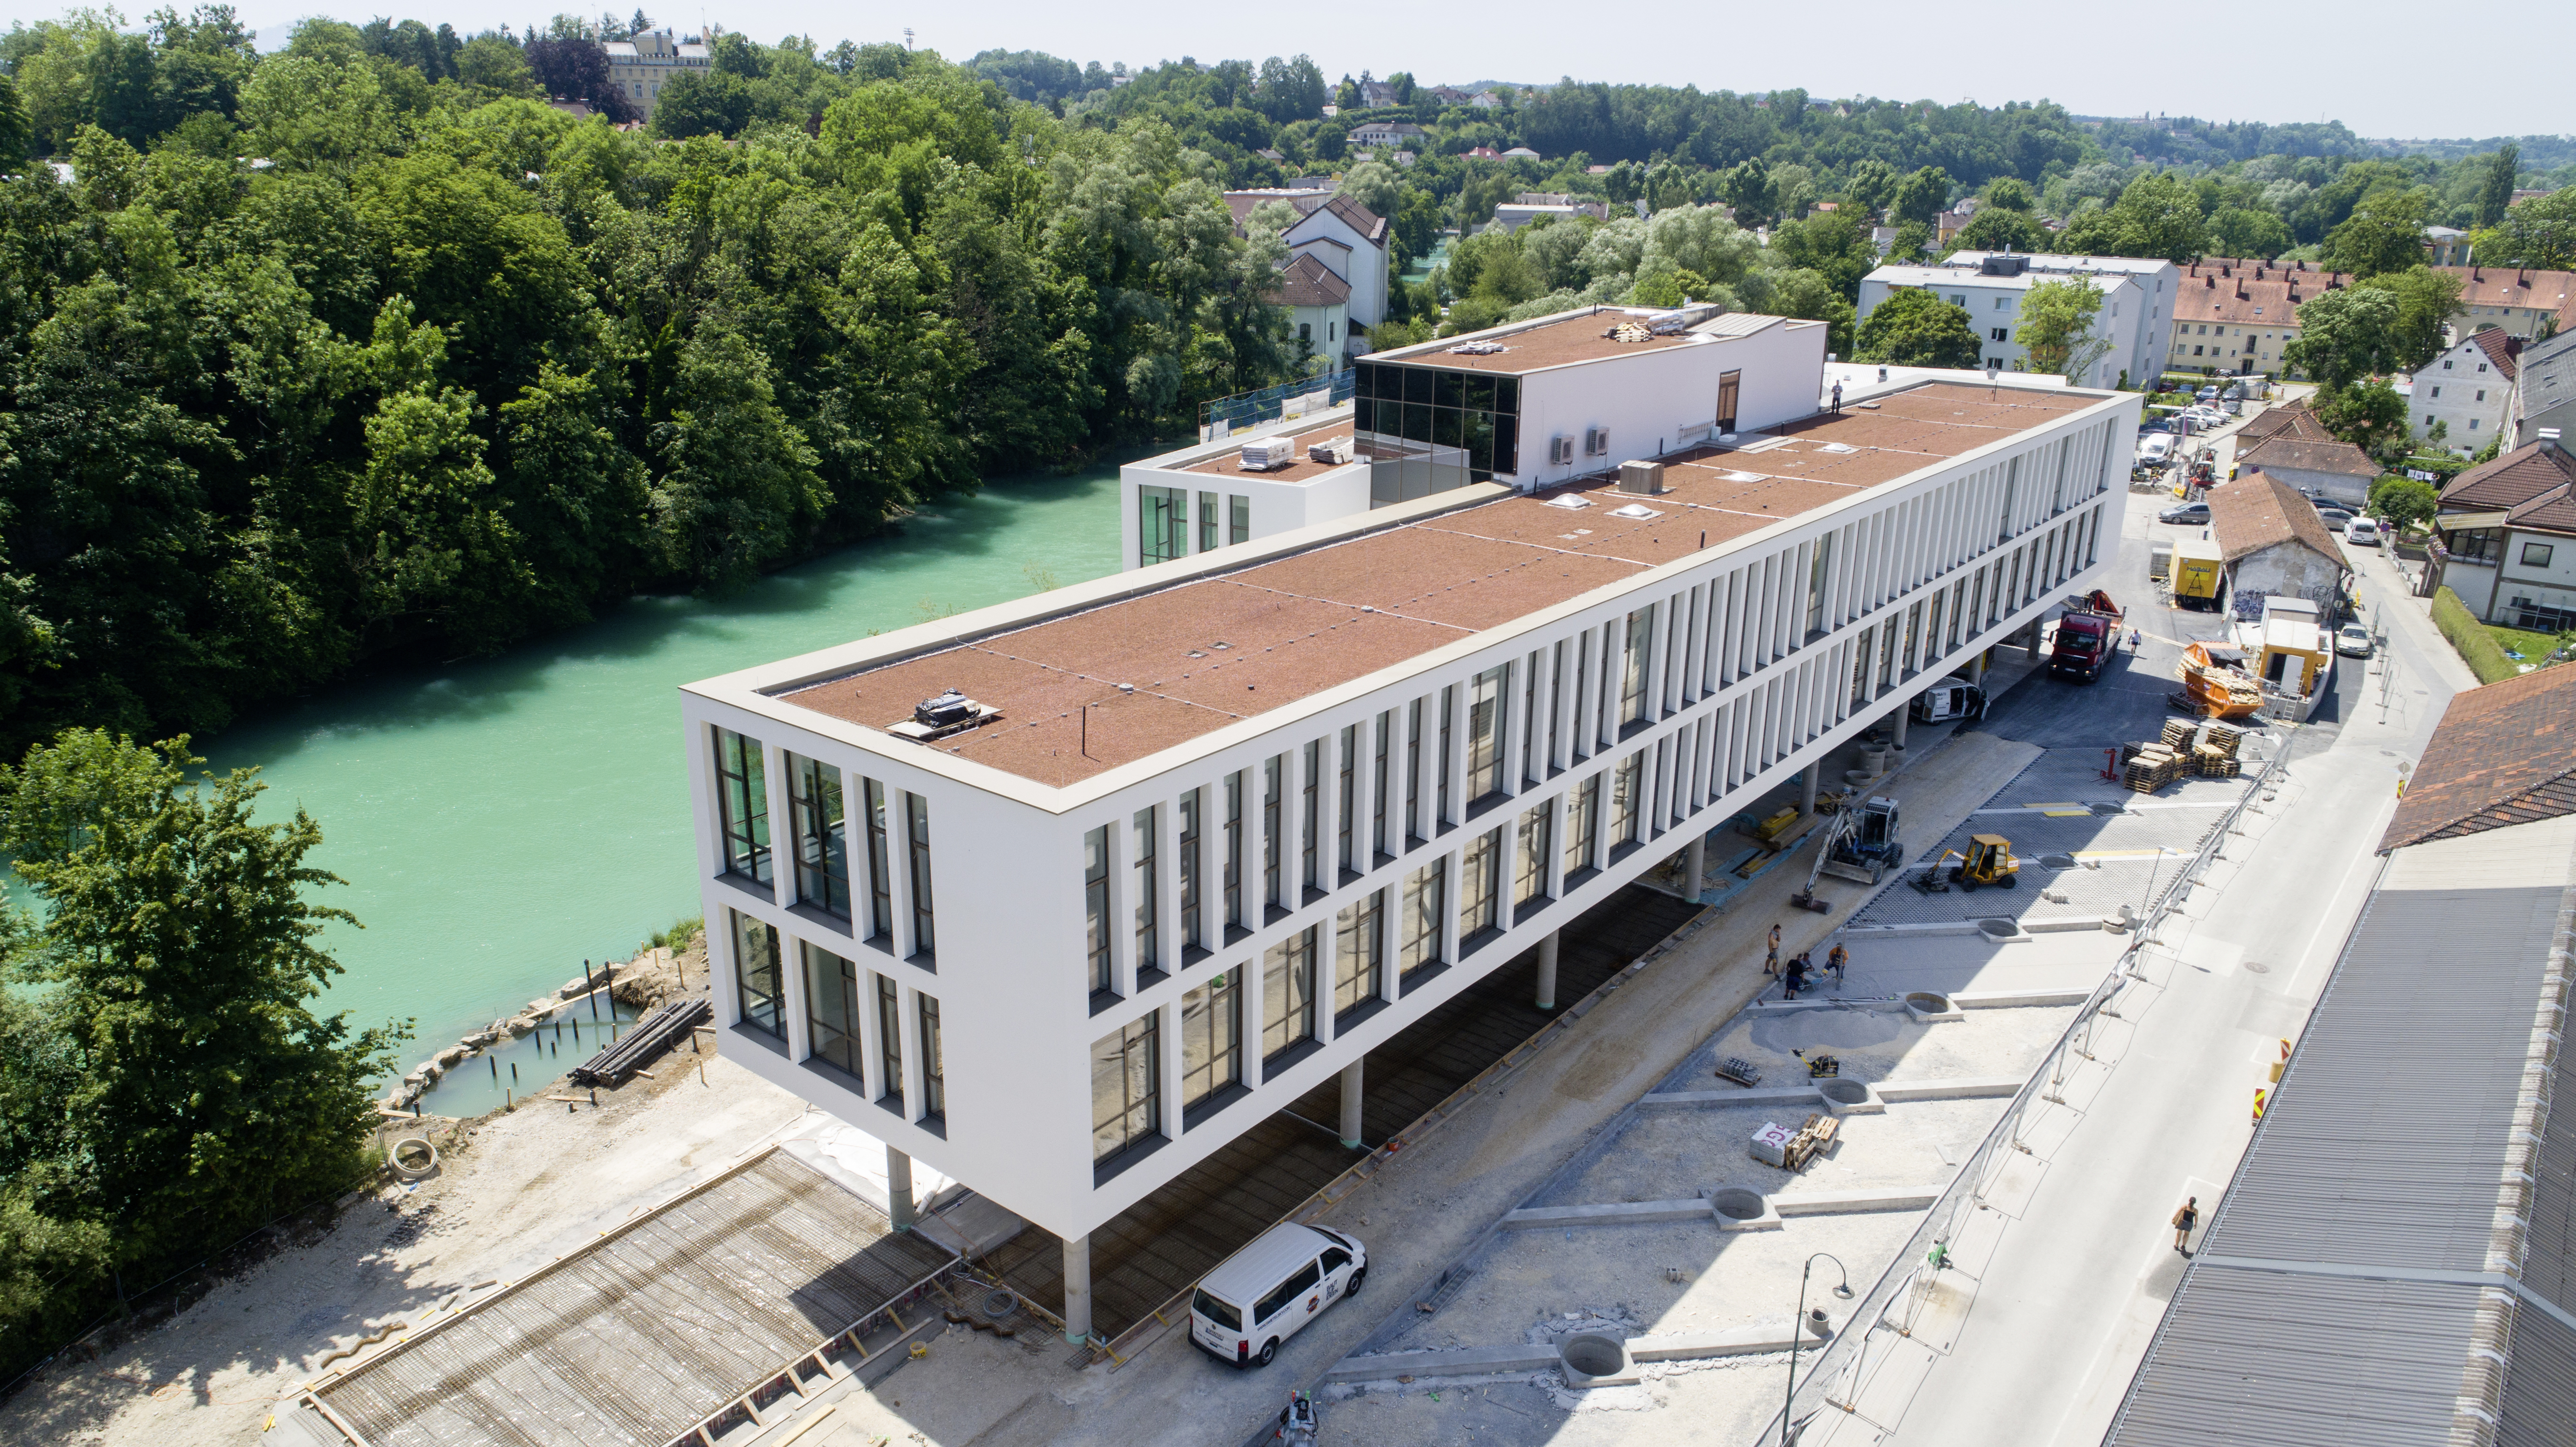 Campusgebäude der Fachhochschule, Steyr - Costruzione edilizia